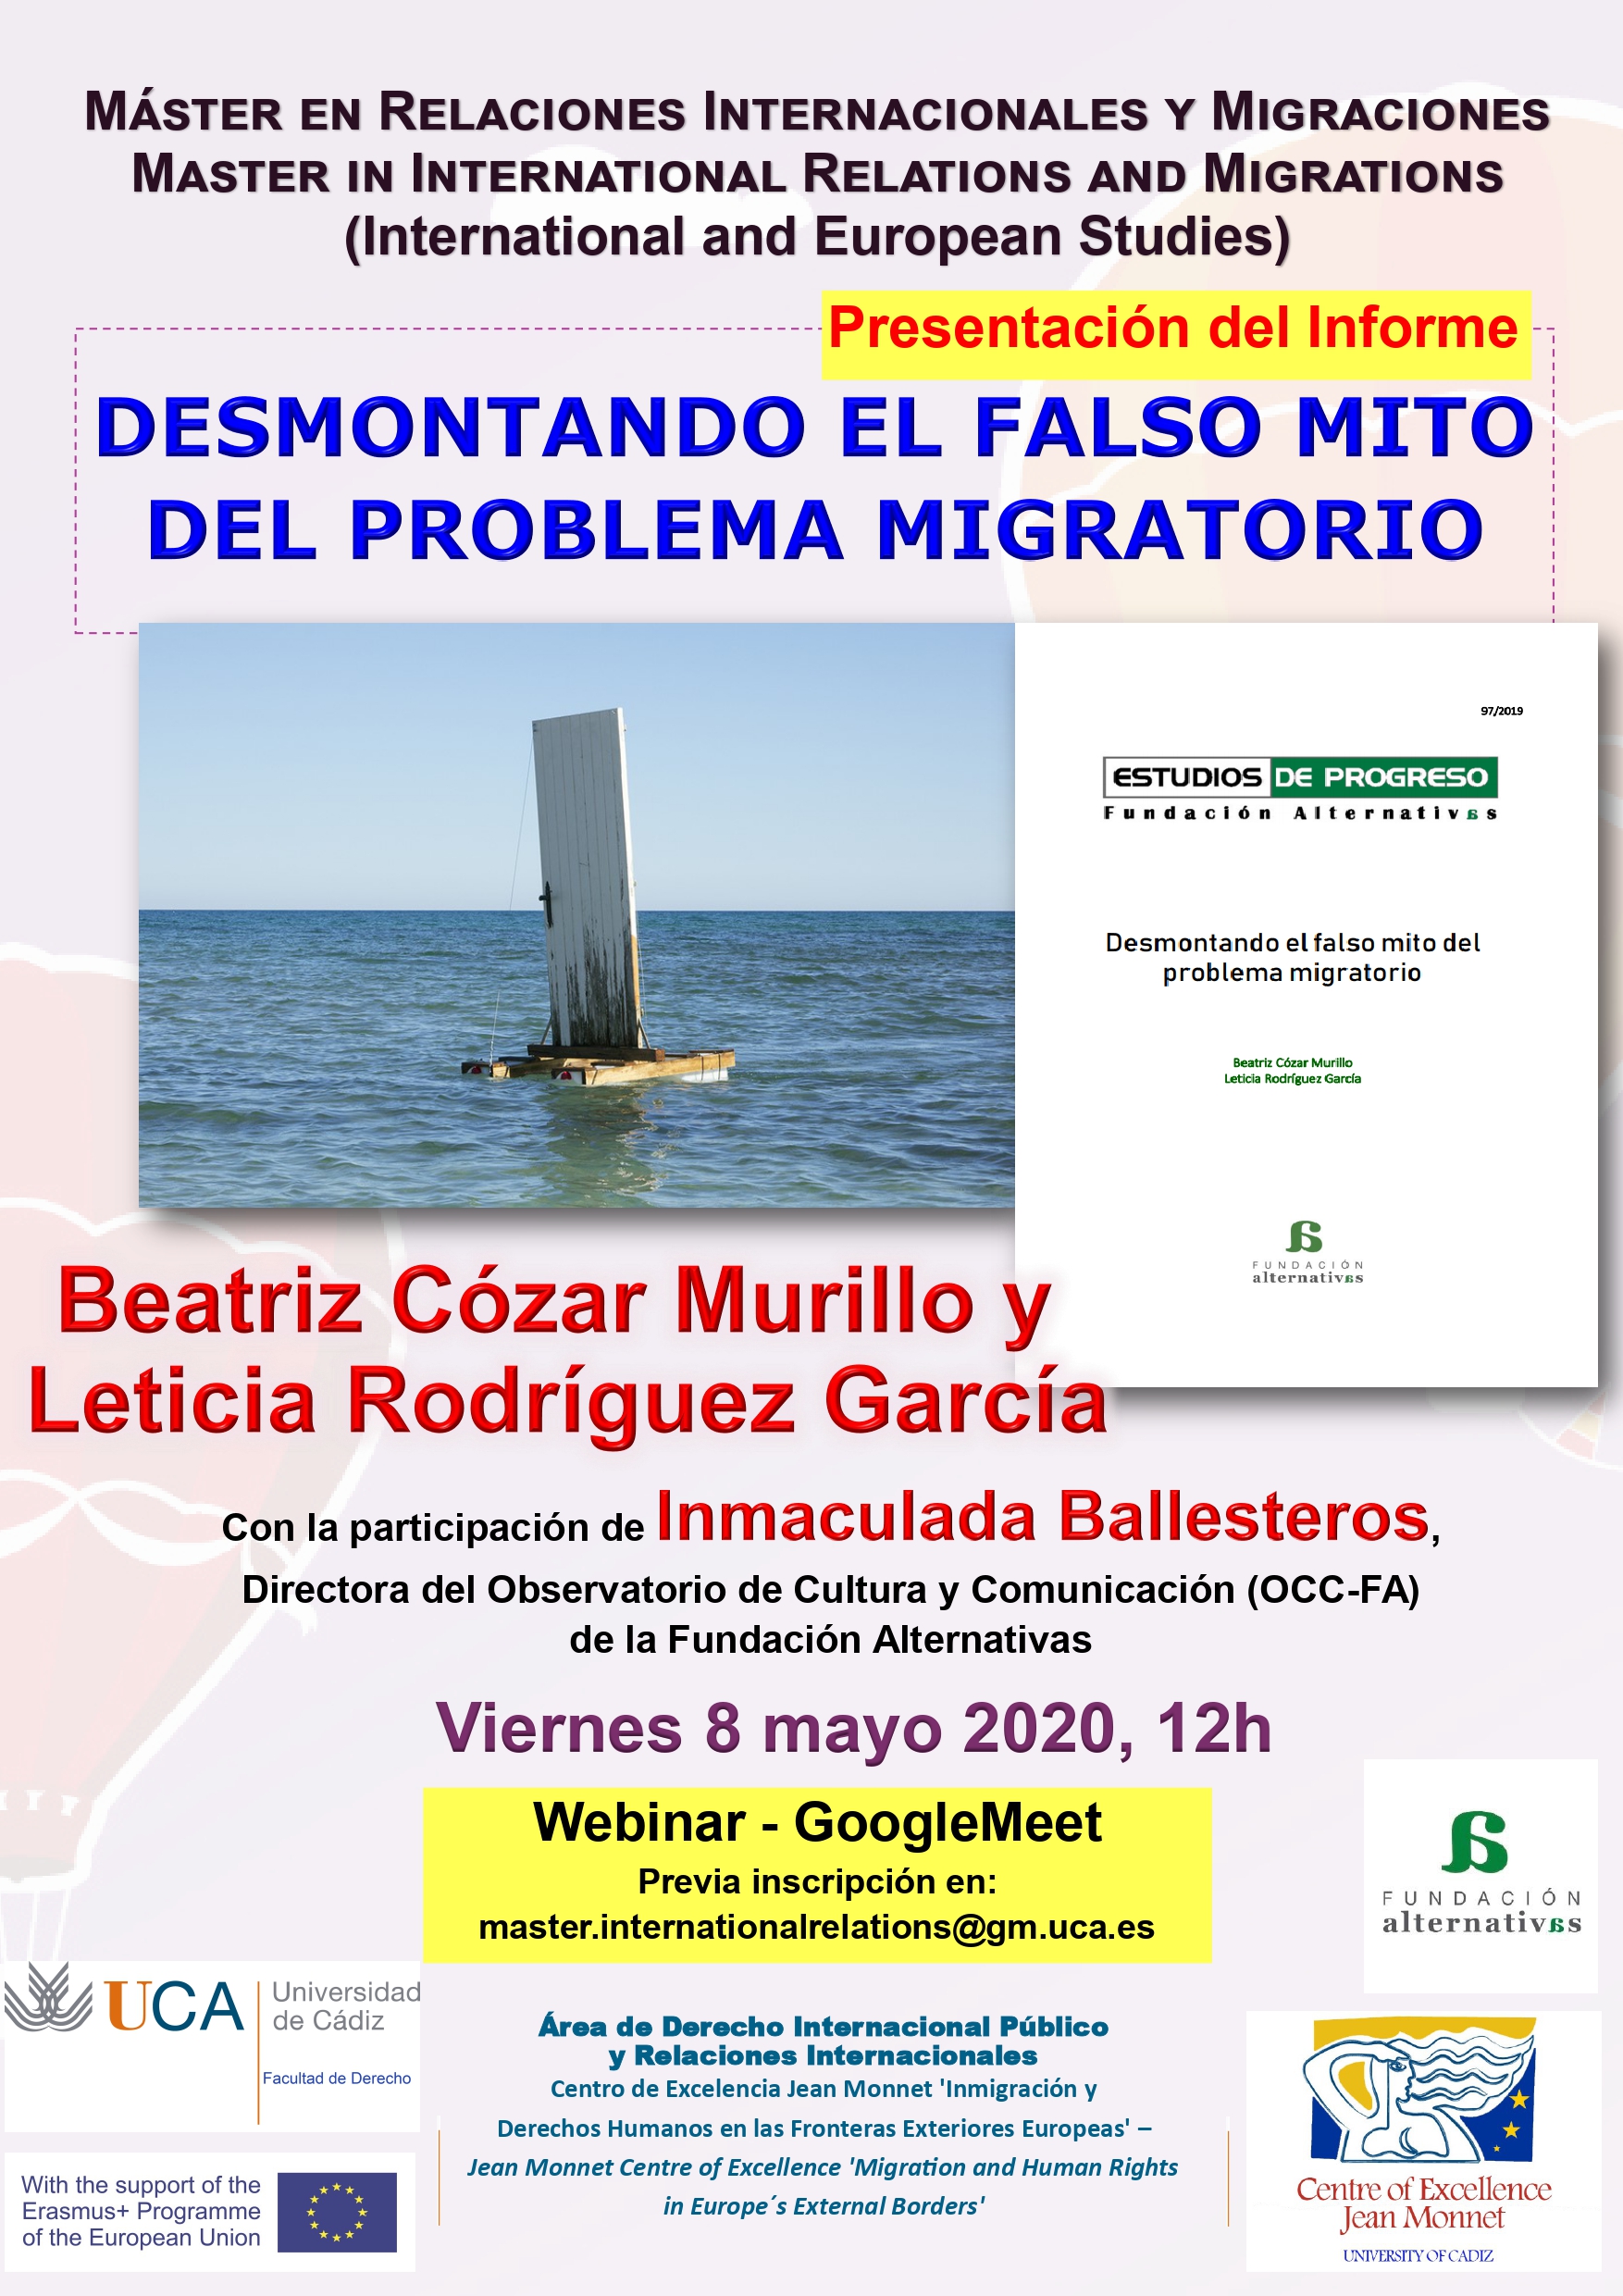 Seminario: Presentación del Informe de la Fundación Alternativas, “DESMONTANDO EL FALSO MITO DEL PROBLEMA MIGRATORIO”